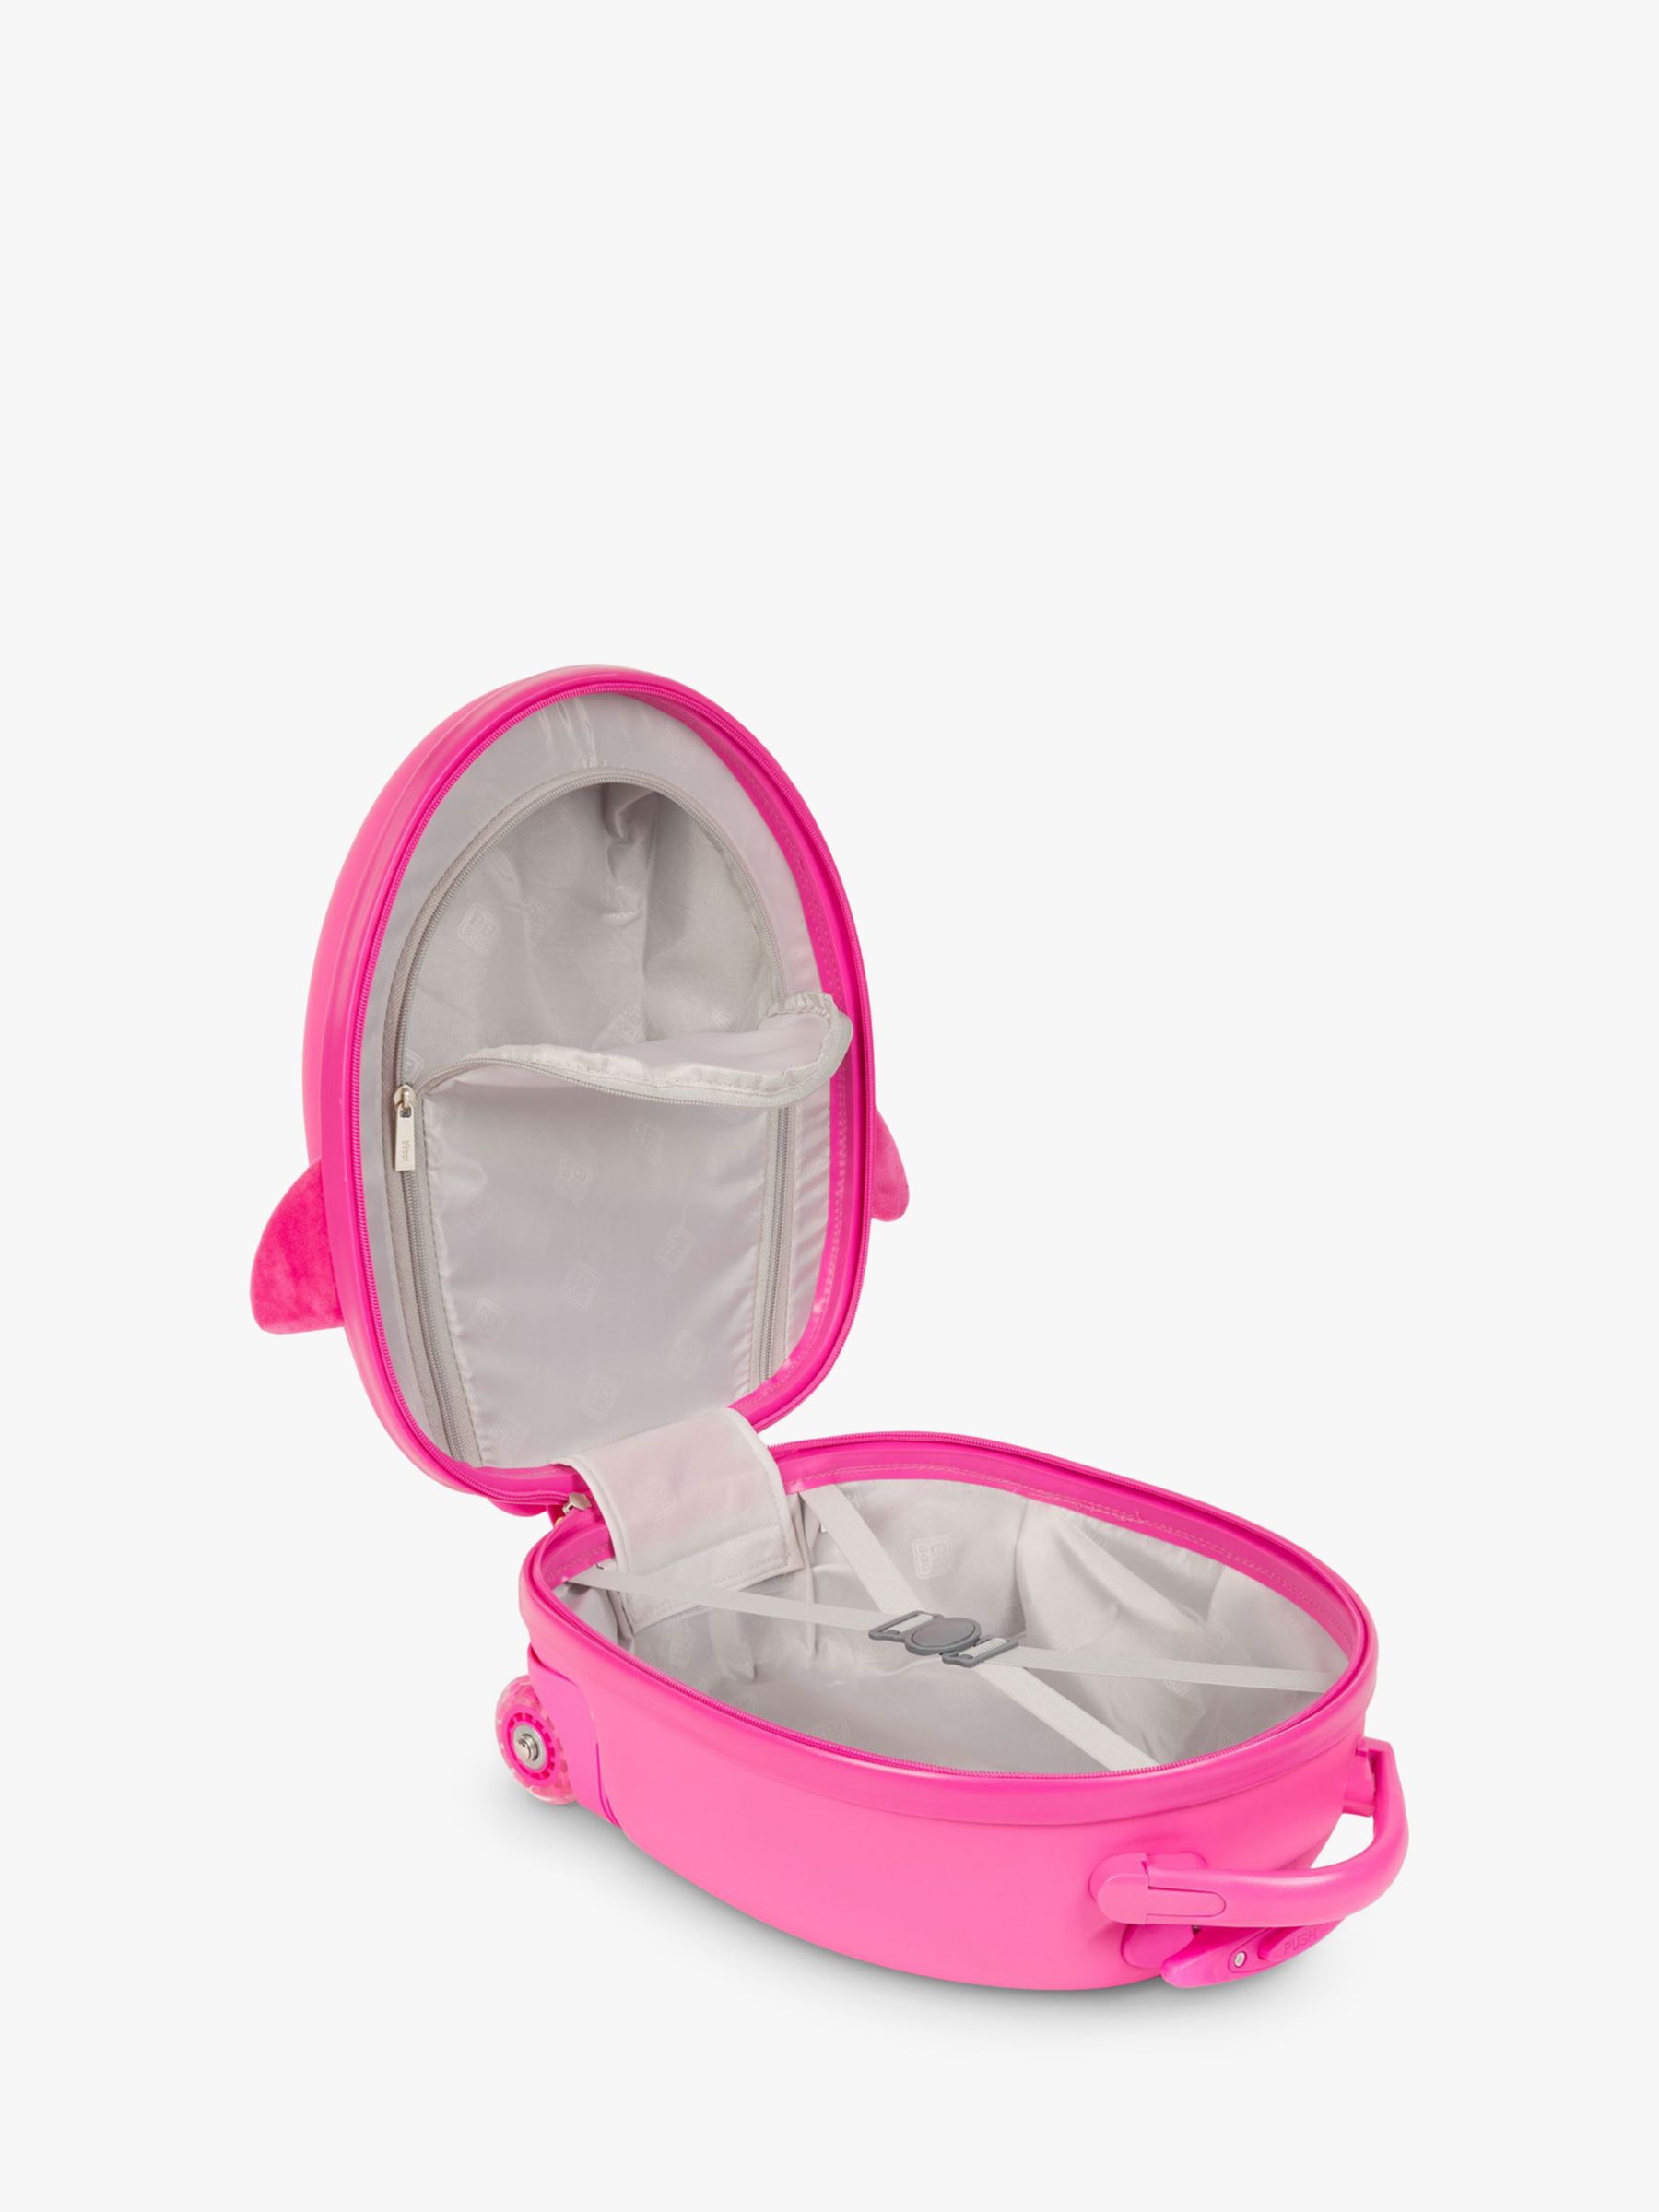 boppi Tiny Trekker Penguin 2 Wheel Cabin Suitcase, 17L, Pink